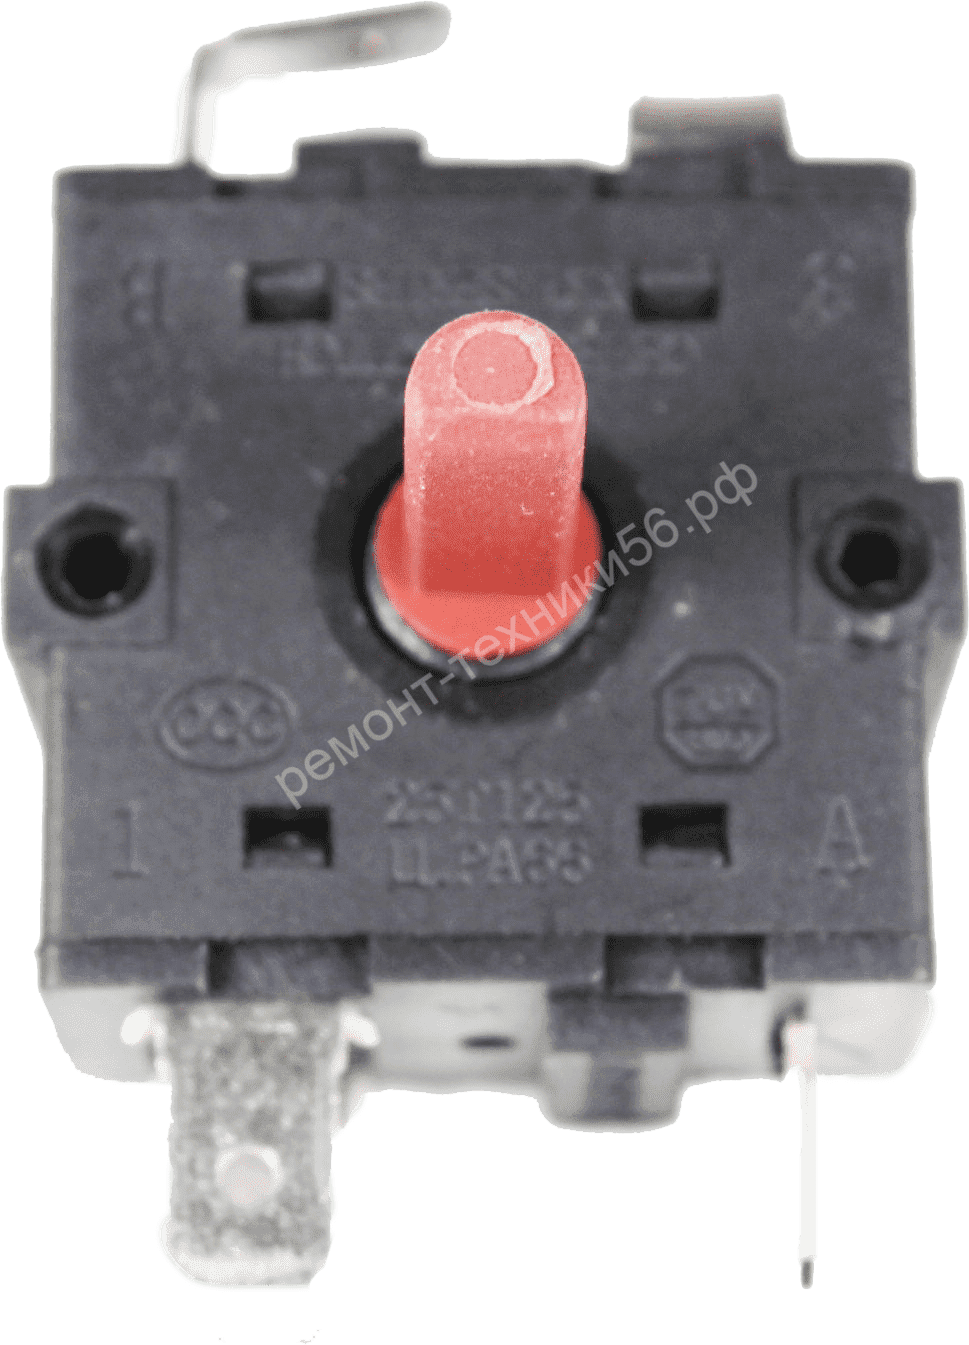 Переключатель Rotary Switch XK1-233,2-1 - широкий ассортимент фото3